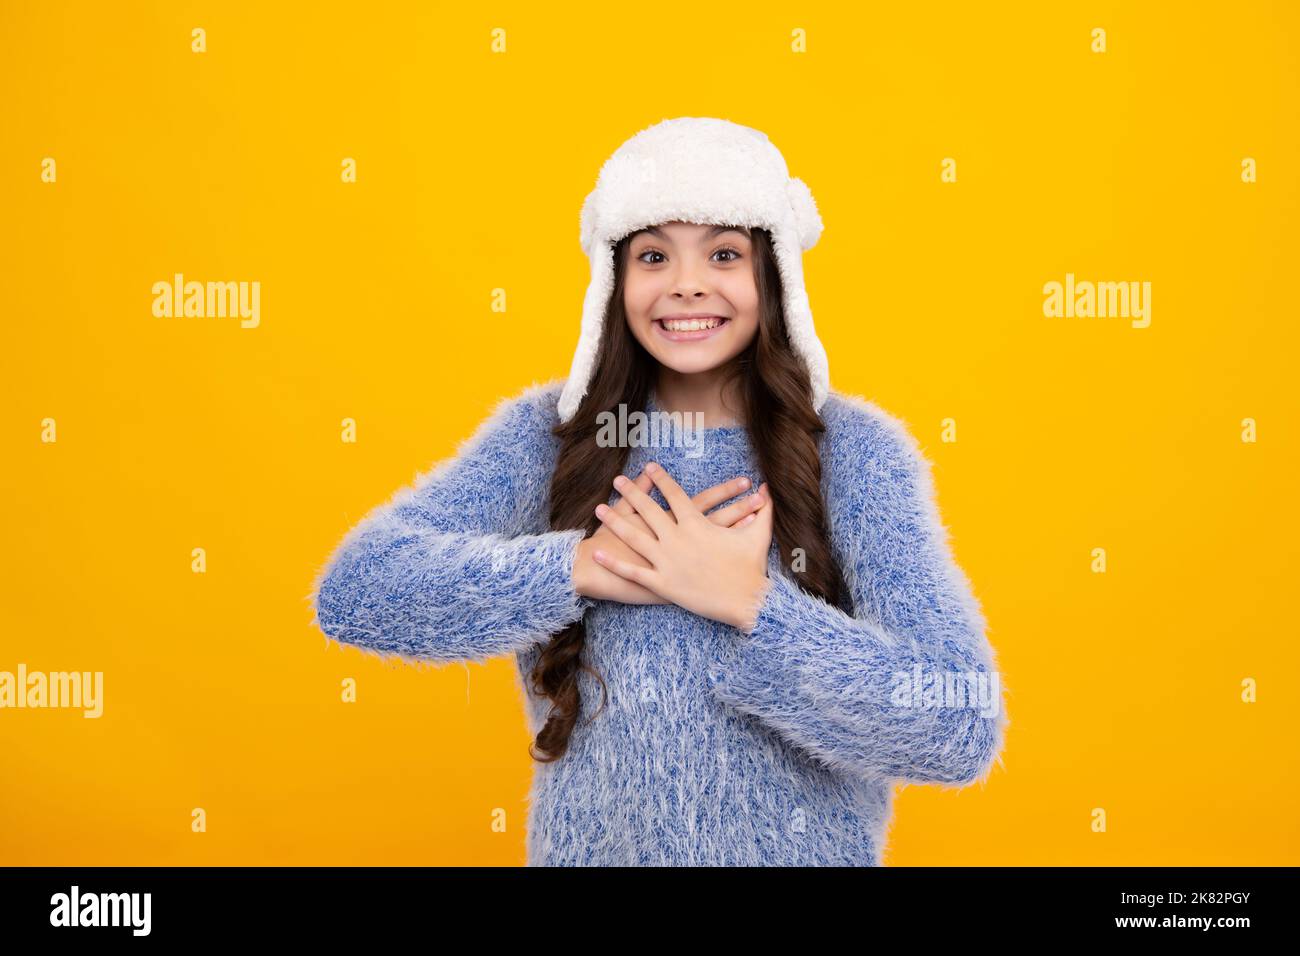 Bel ritratto invernale per bambini. Ragazza adolescente in posa con maglione invernale e cappello a maglia su sfondo giallo. Felice adolescente, positivo e sorridente Foto Stock